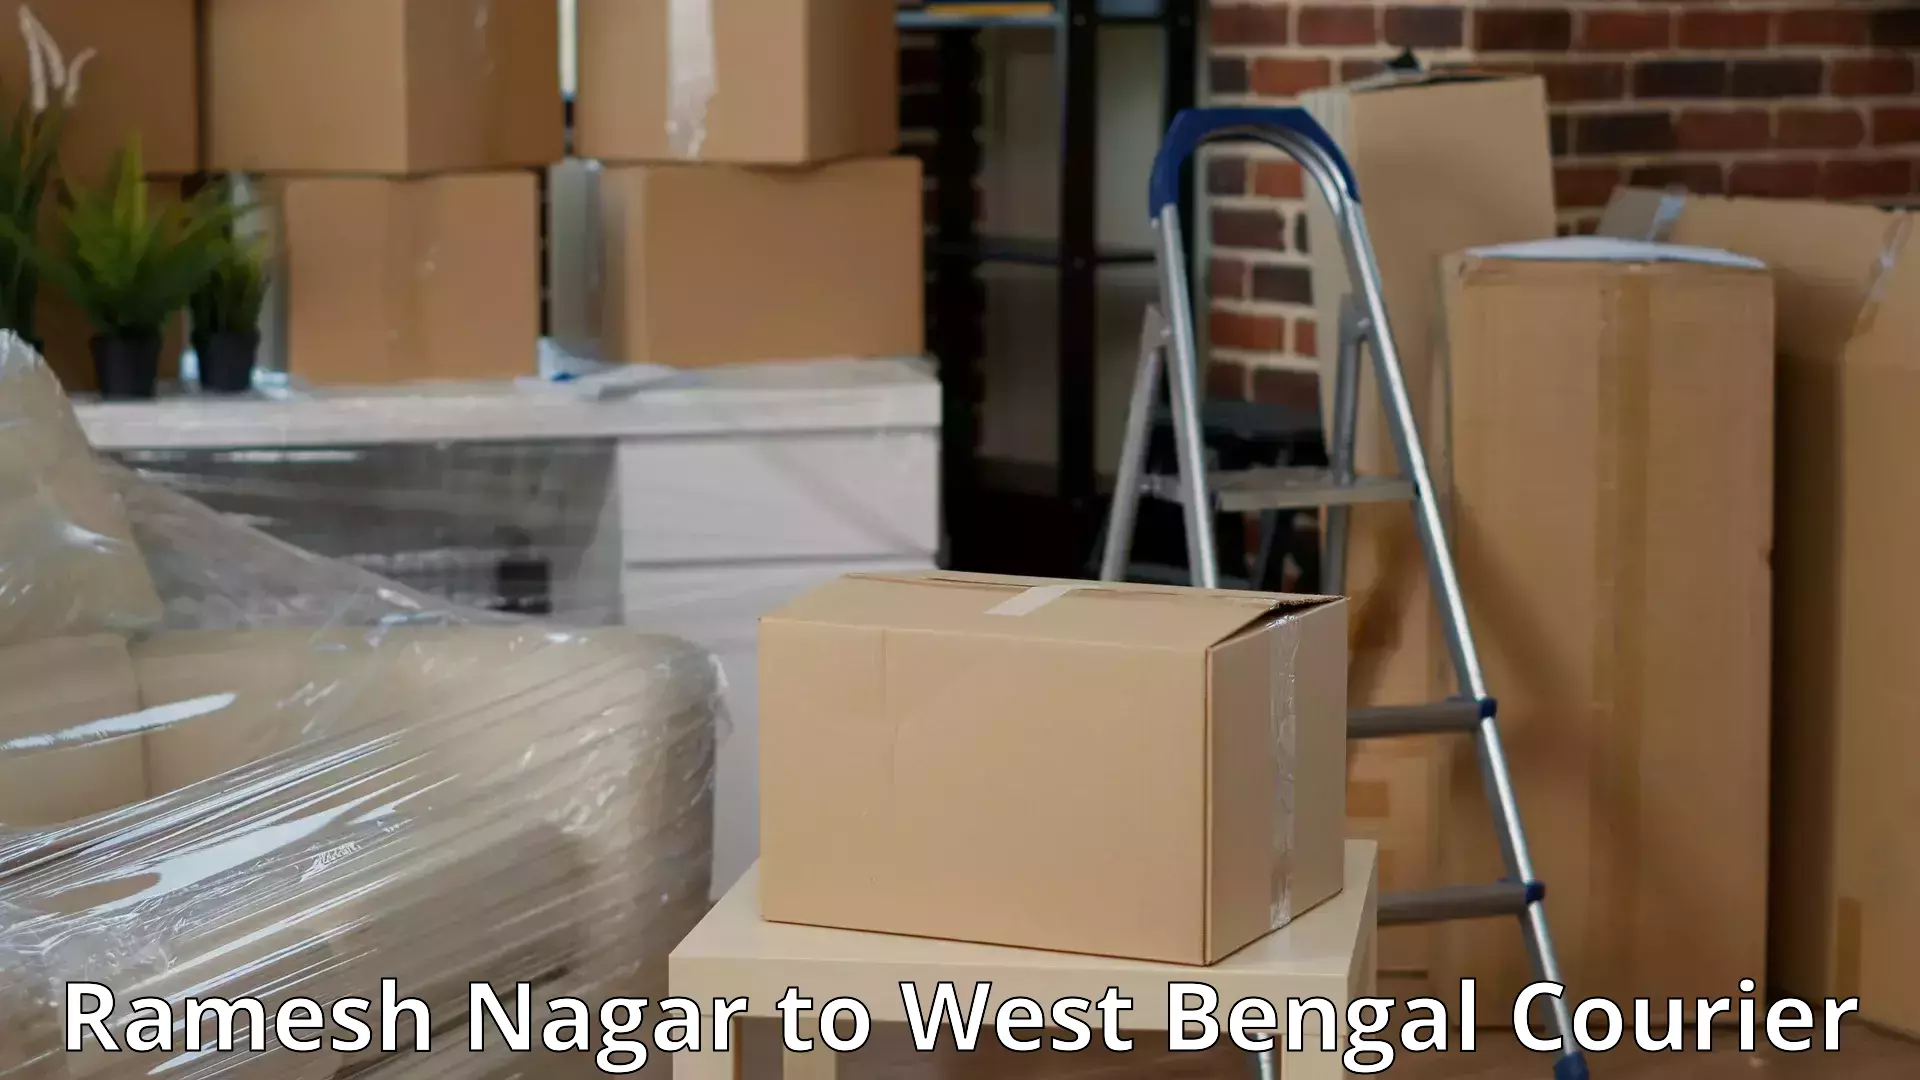 Furniture moving experts Ramesh Nagar to Tamluk